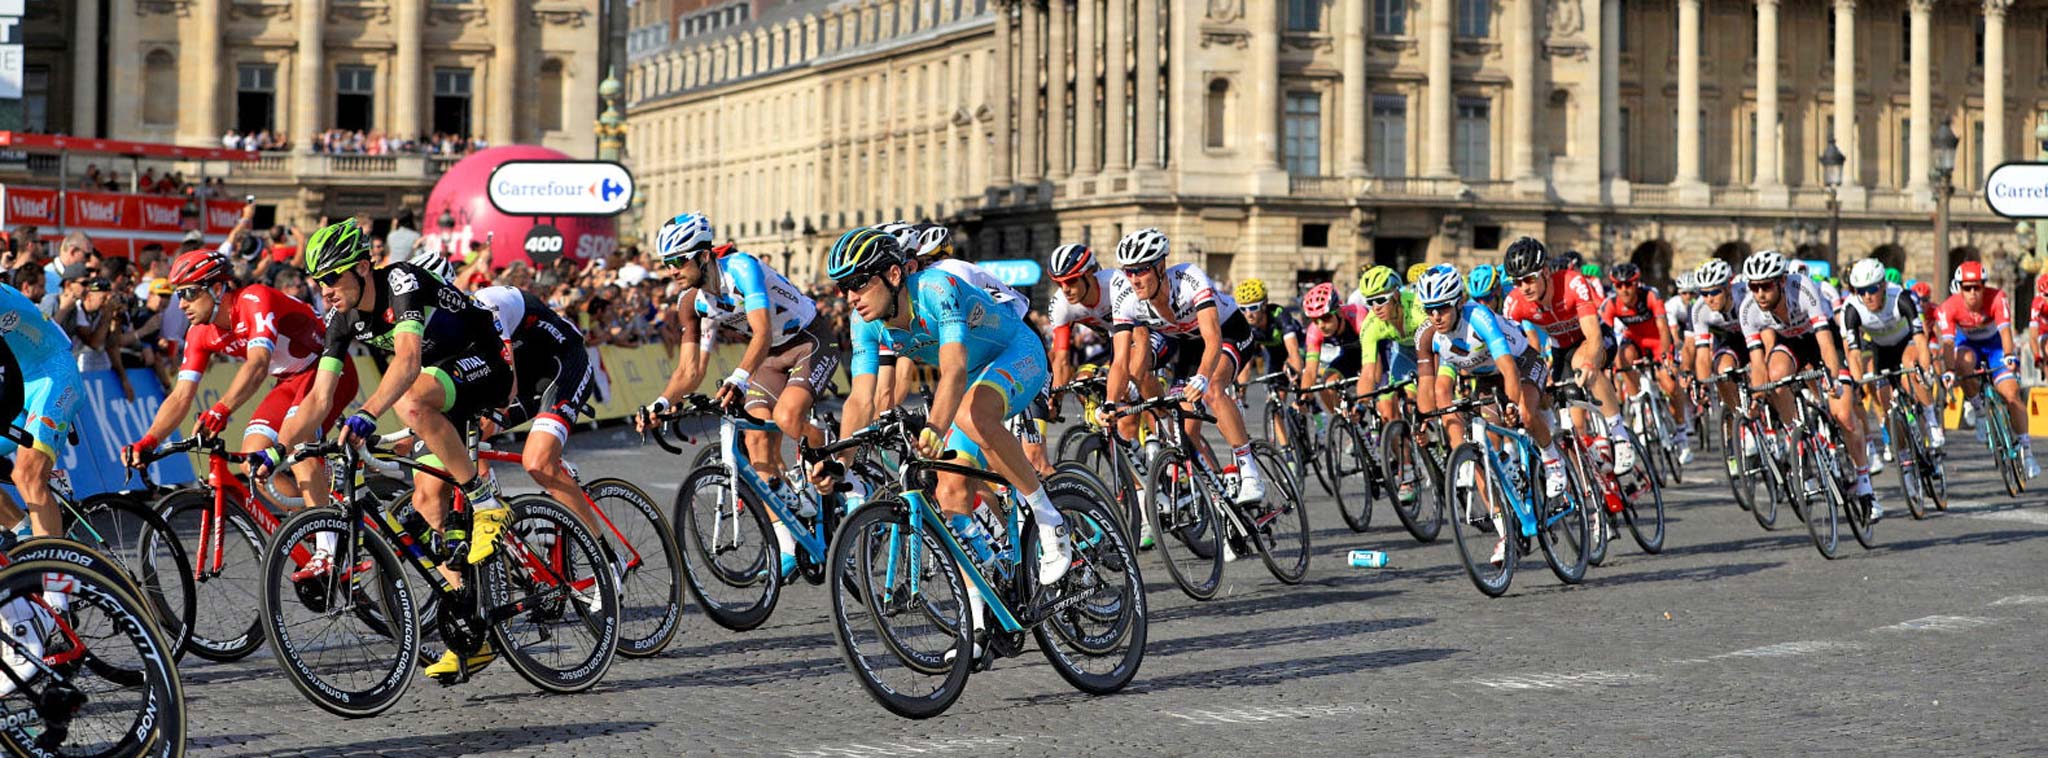 Lần đầu tiên dùng AI để dự đoán, phân tích thông tin chi tiết diễn biến Tour de France